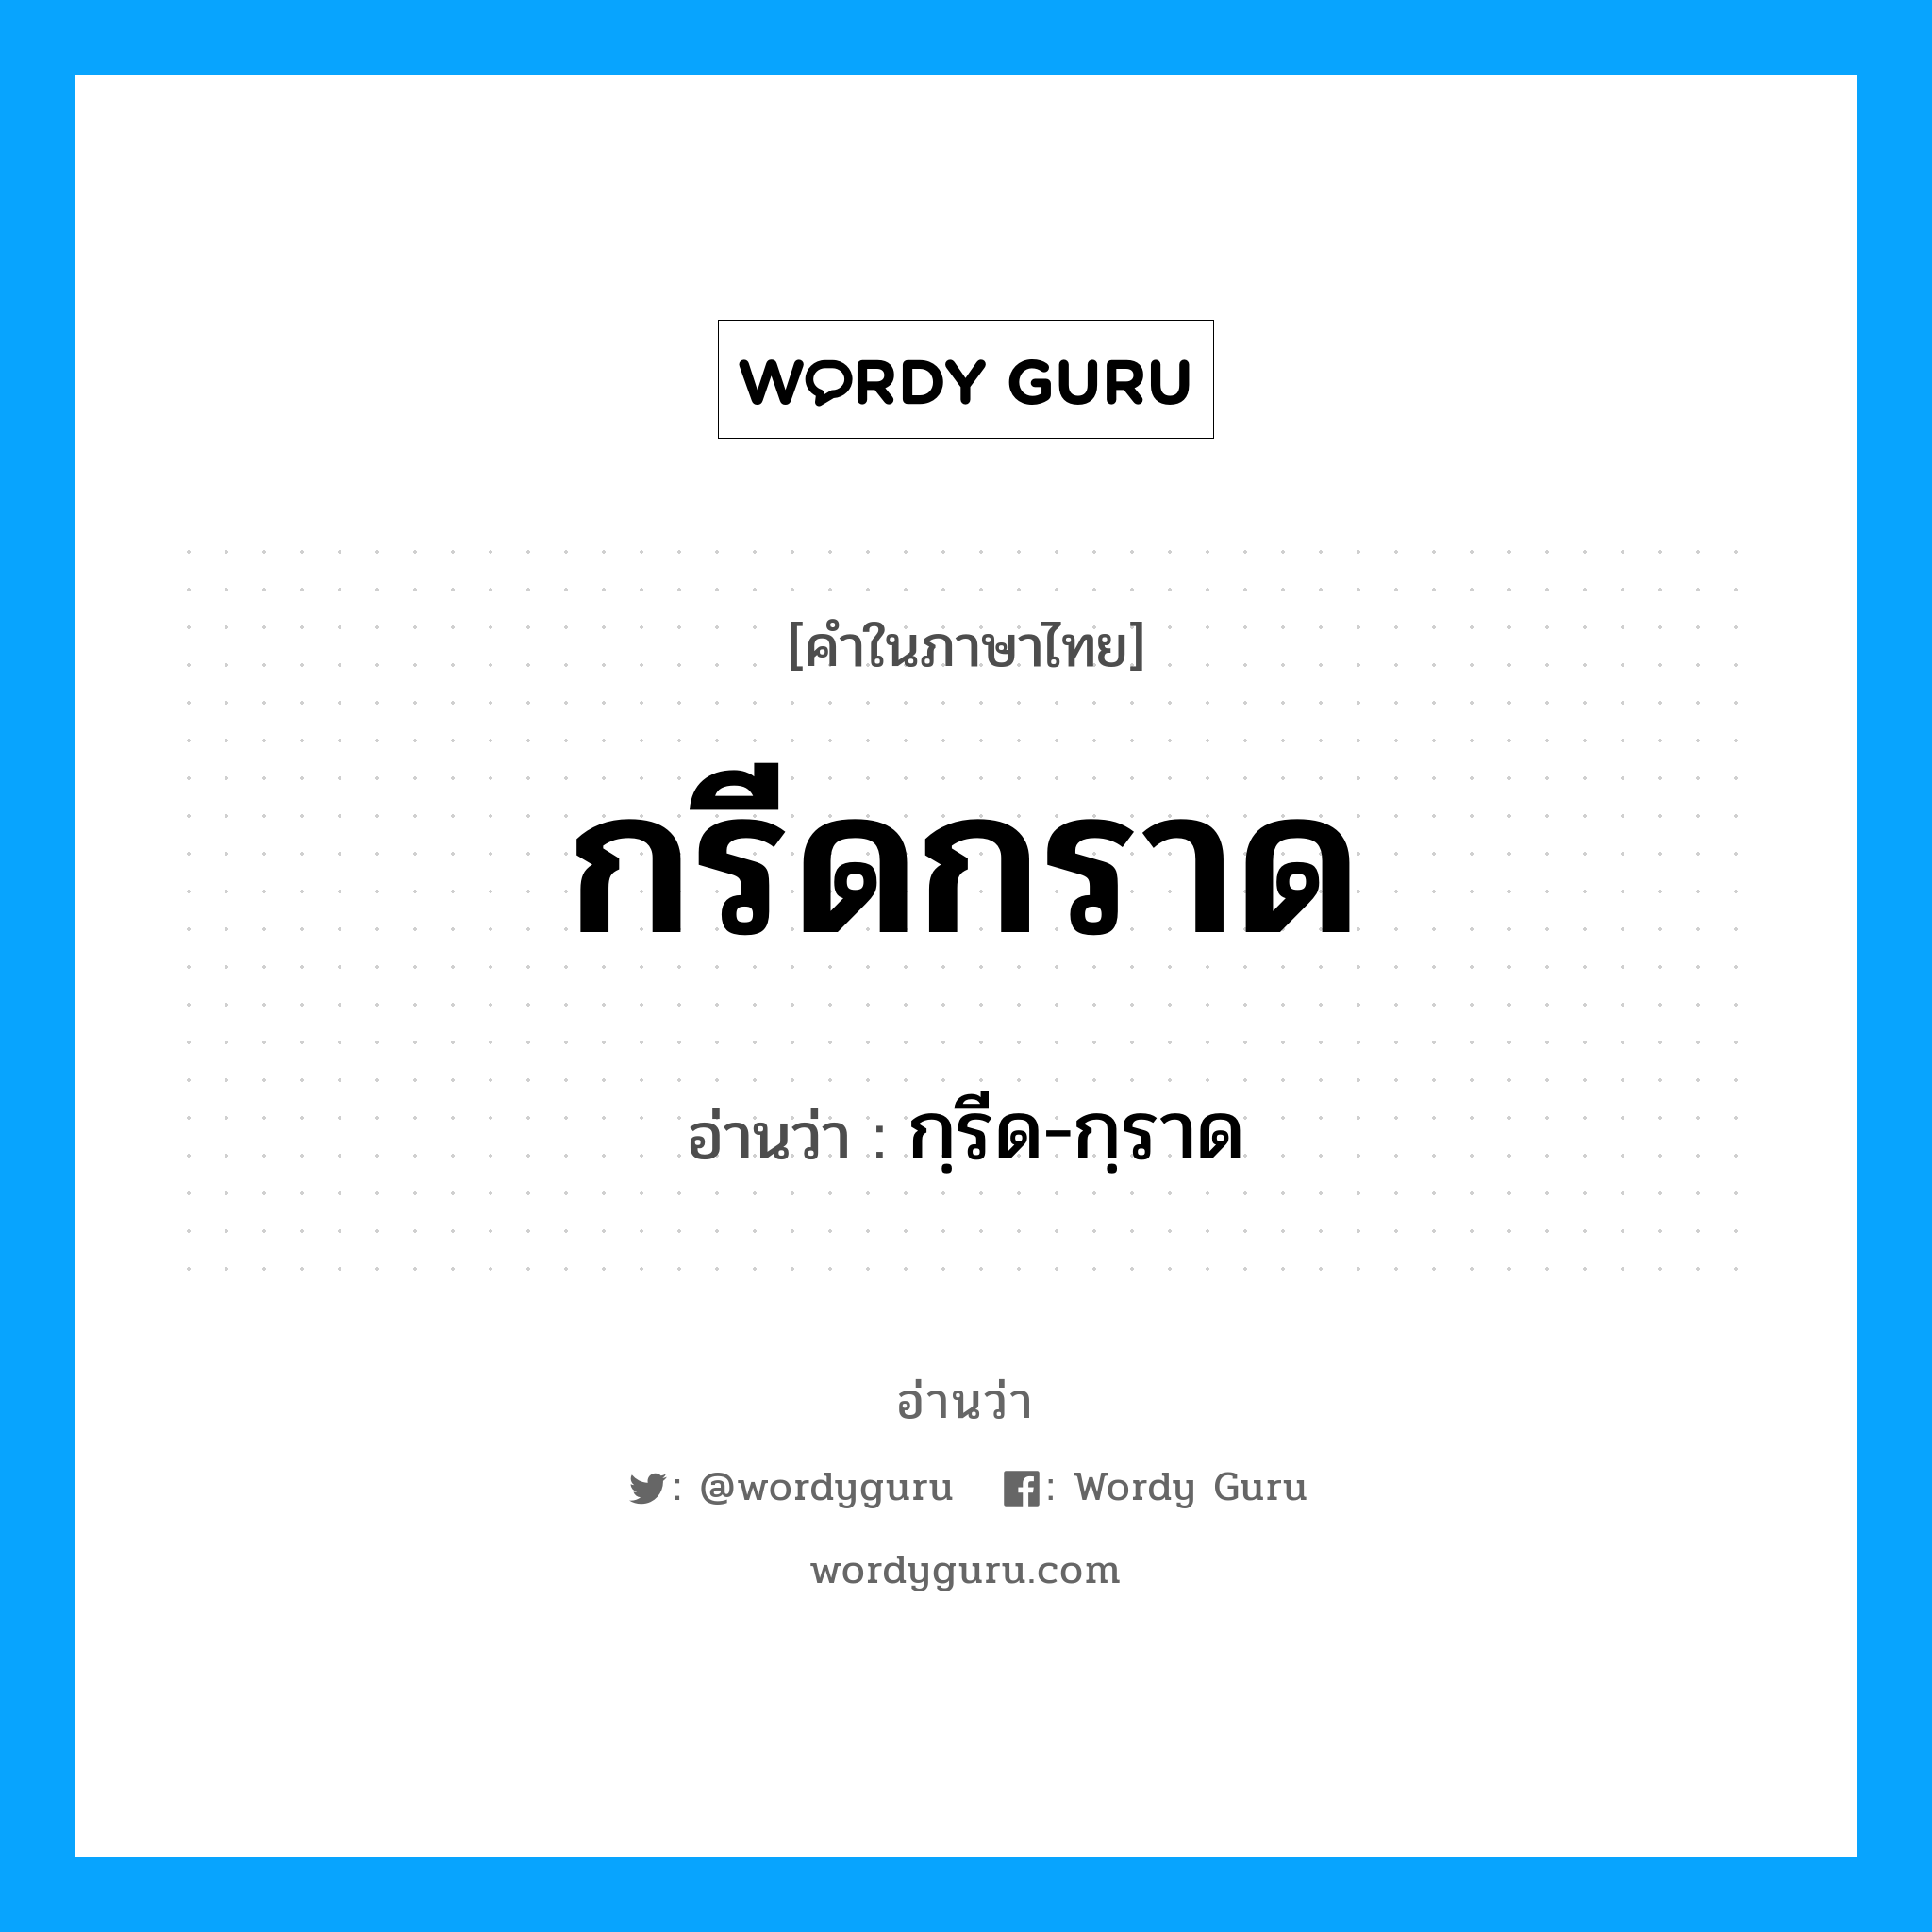 กฺรีด-กฺราด เป็นคำอ่านของคำไหน?, คำในภาษาไทย กฺรีด-กฺราด อ่านว่า กรีดกราด